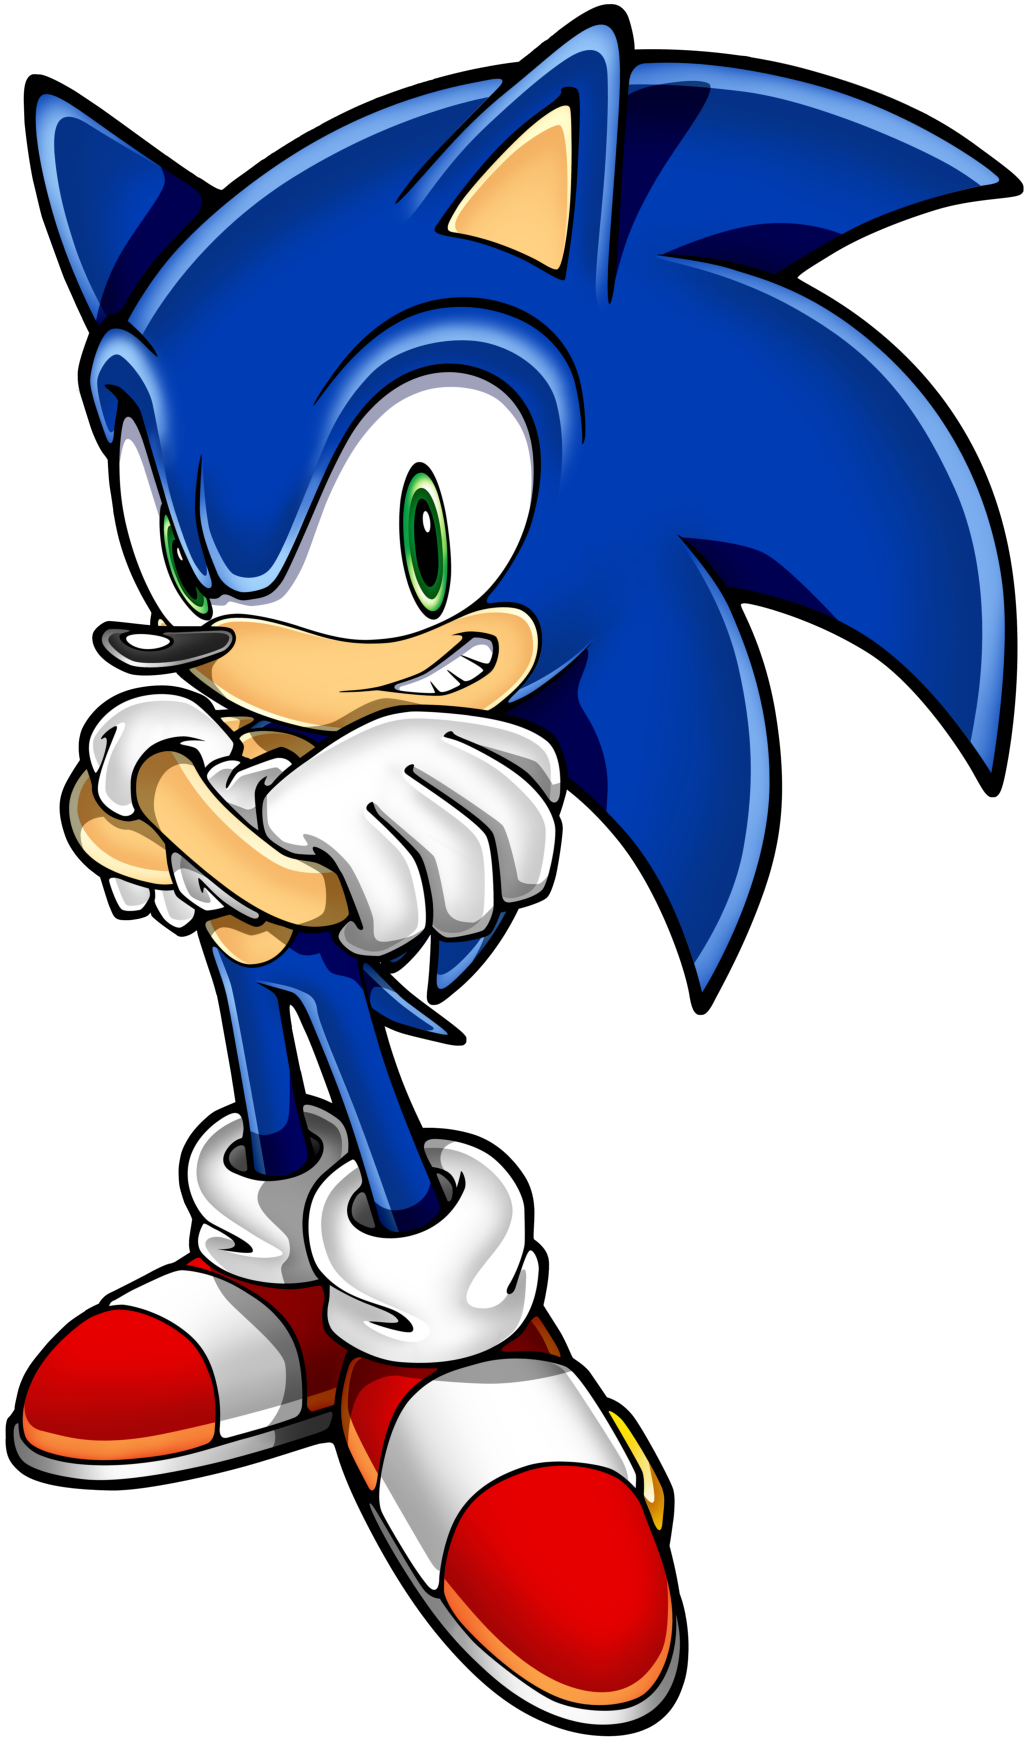 Sonic-The-Hedgehog-PNG-1143435.png, Sonic The Hedgehog PNG - Free PNG